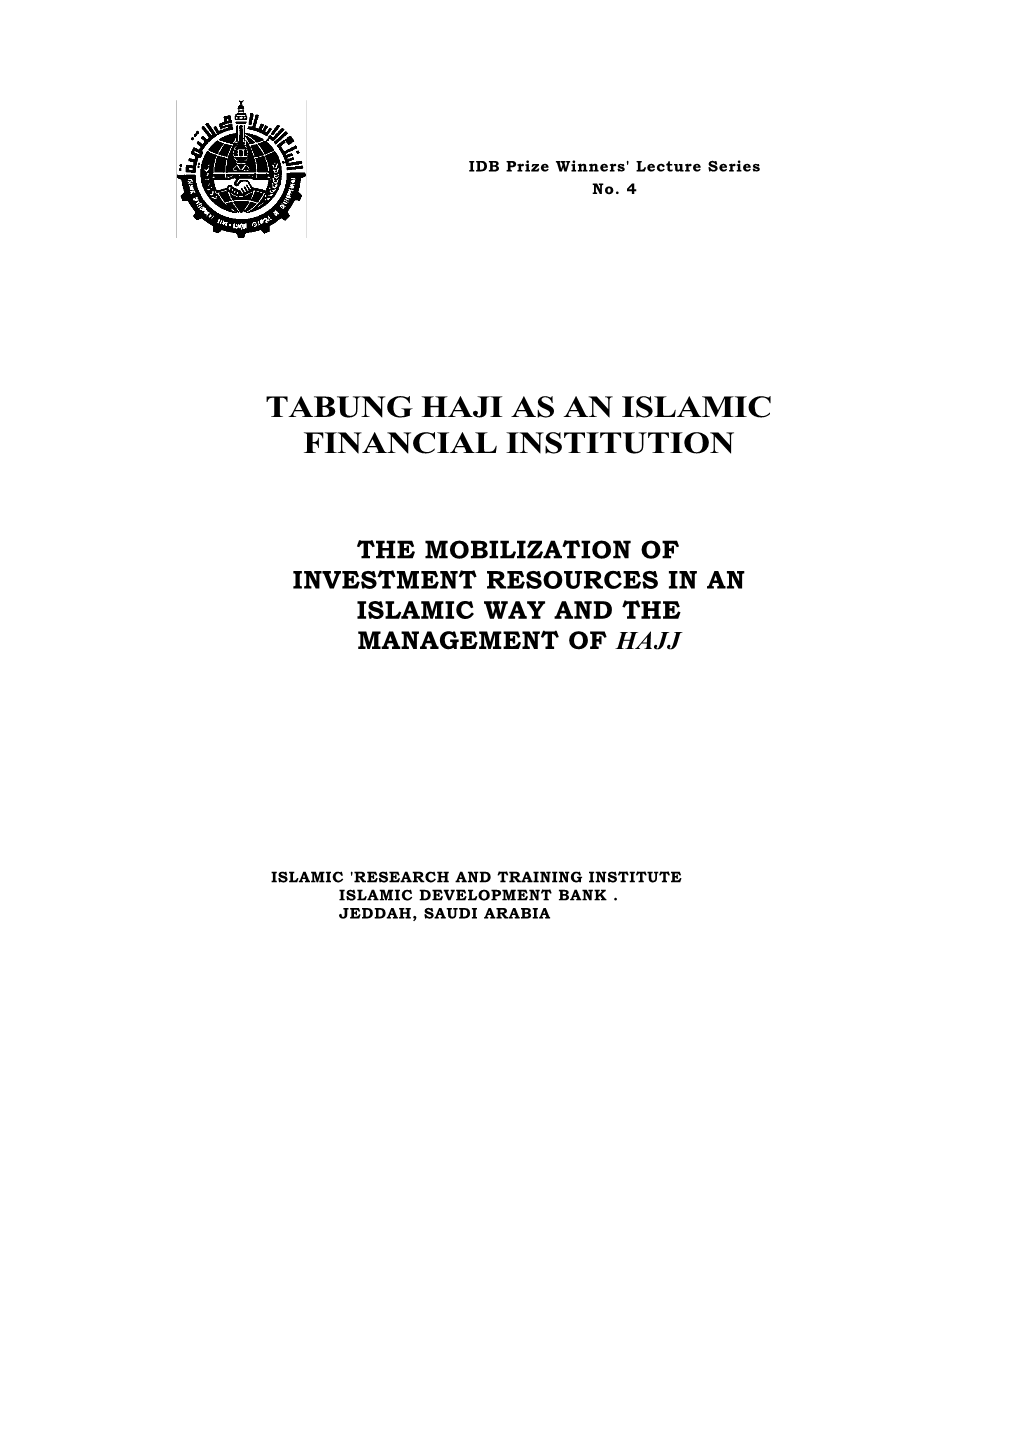 Tabung Haji As an Islamic Financial Institution